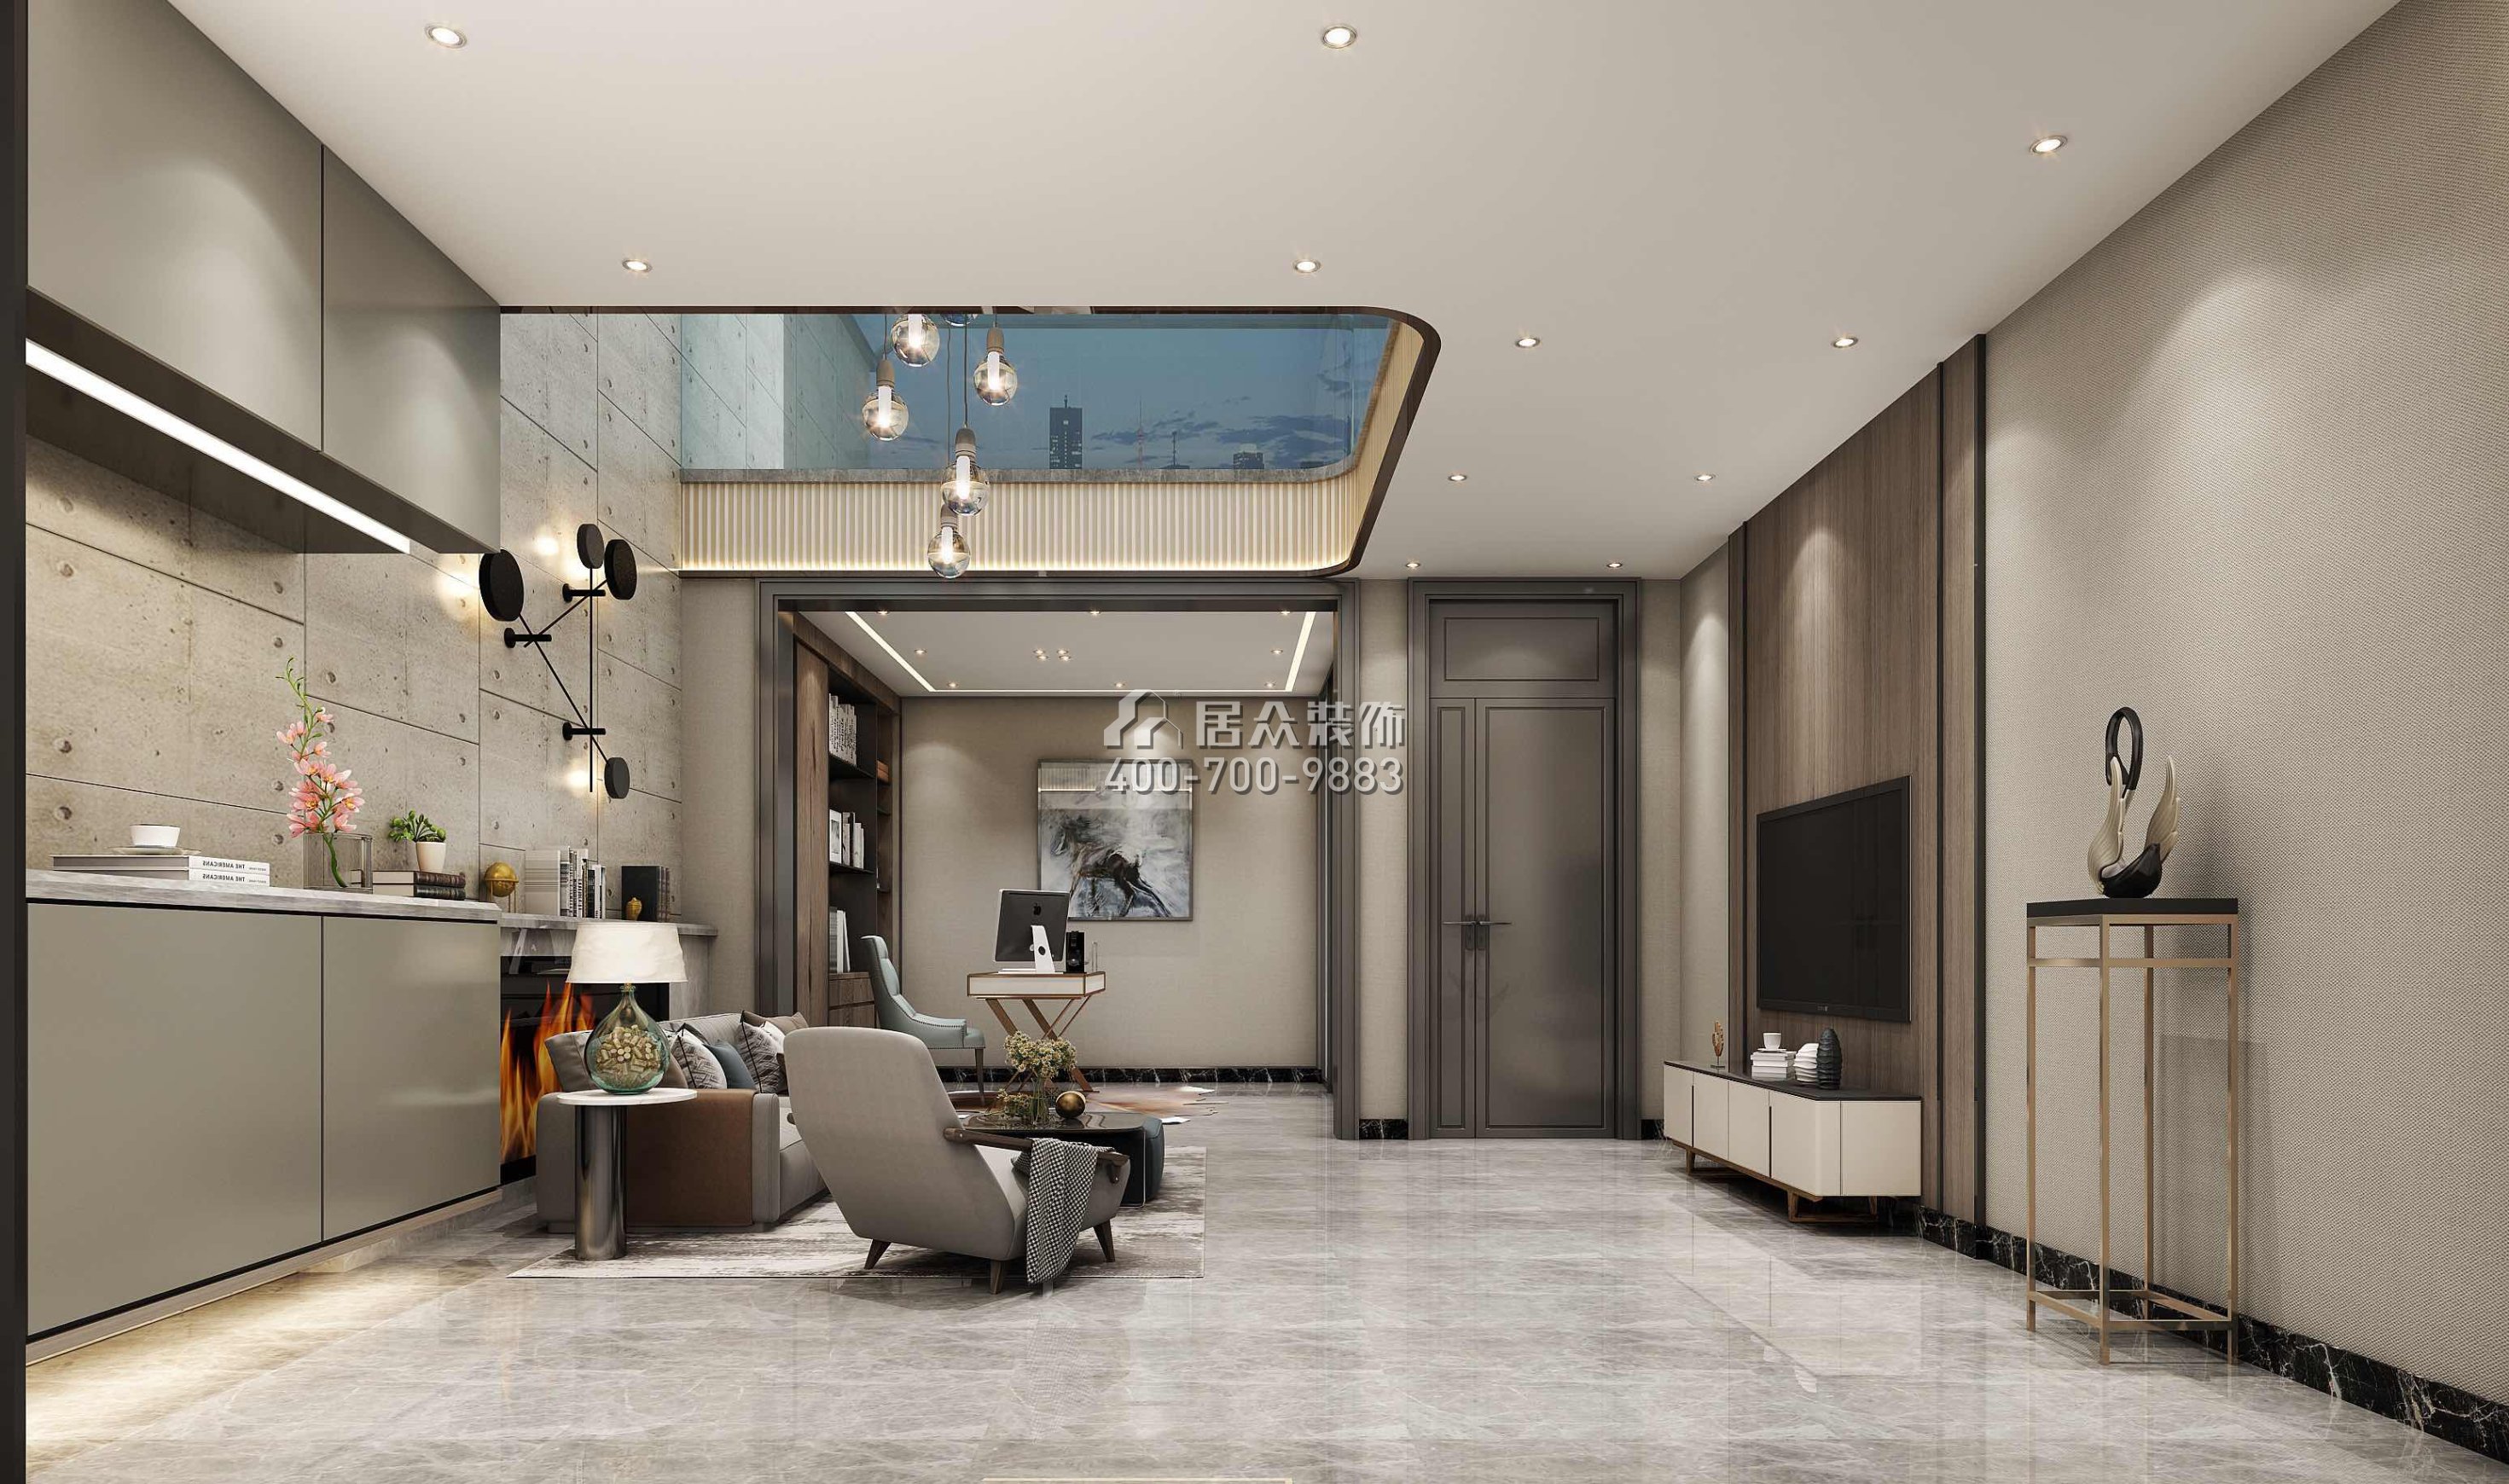 萬科紫臺600平方米現代簡約風格別墅戶型客廳裝修效果圖